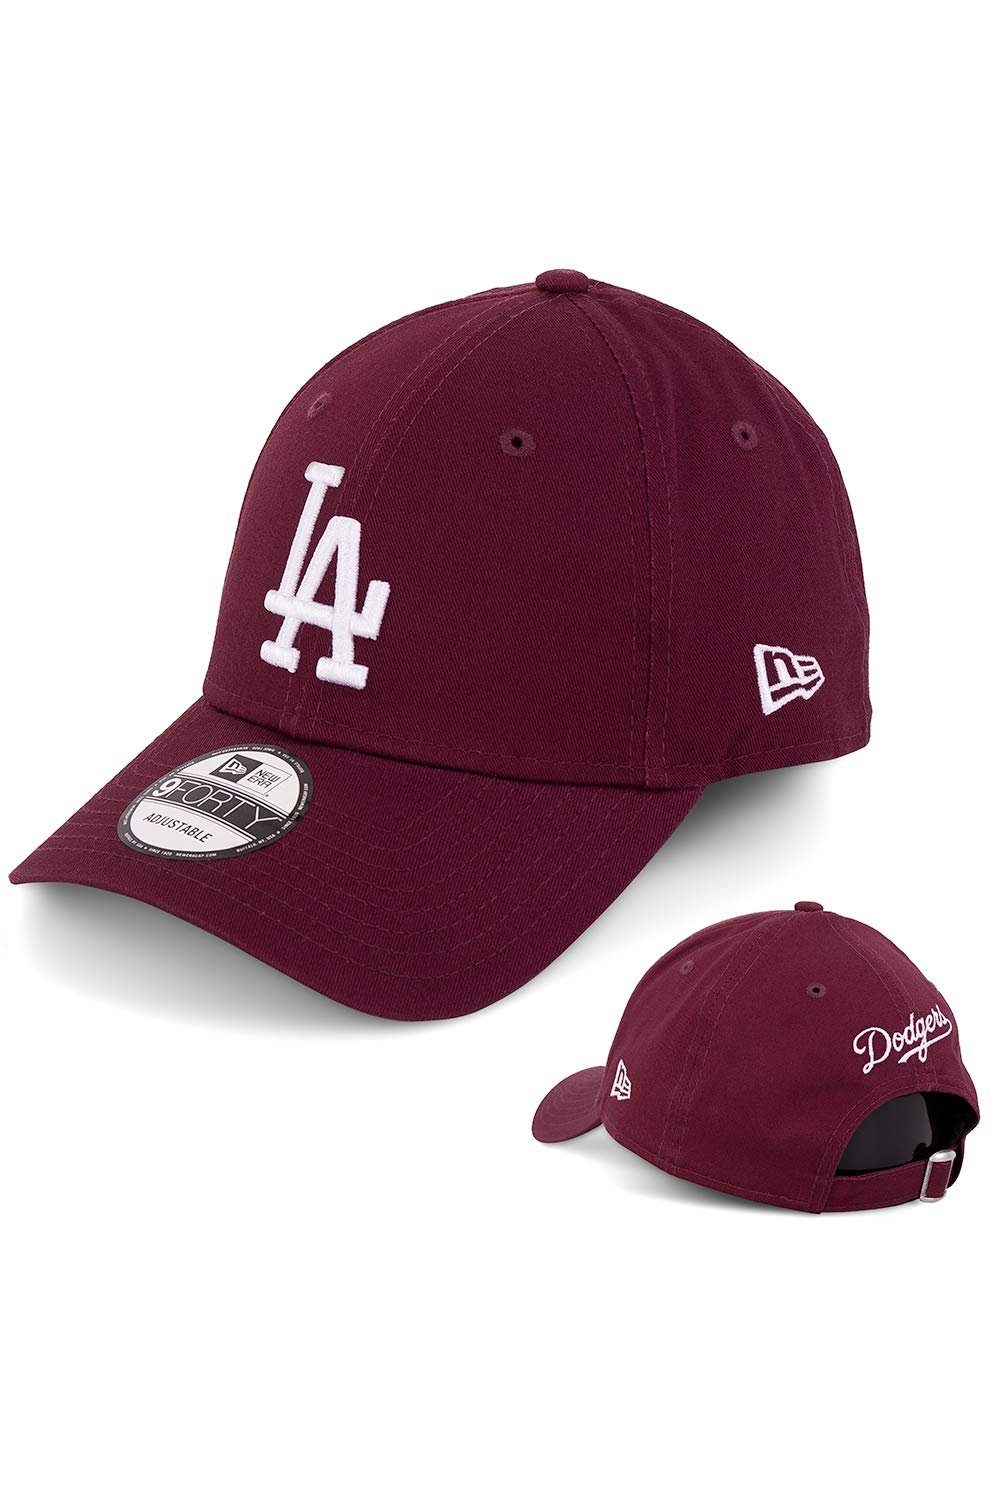 (1-St) Cap Cap New 9Forty Dodgers Era Angeles Baseball Los Era New LA